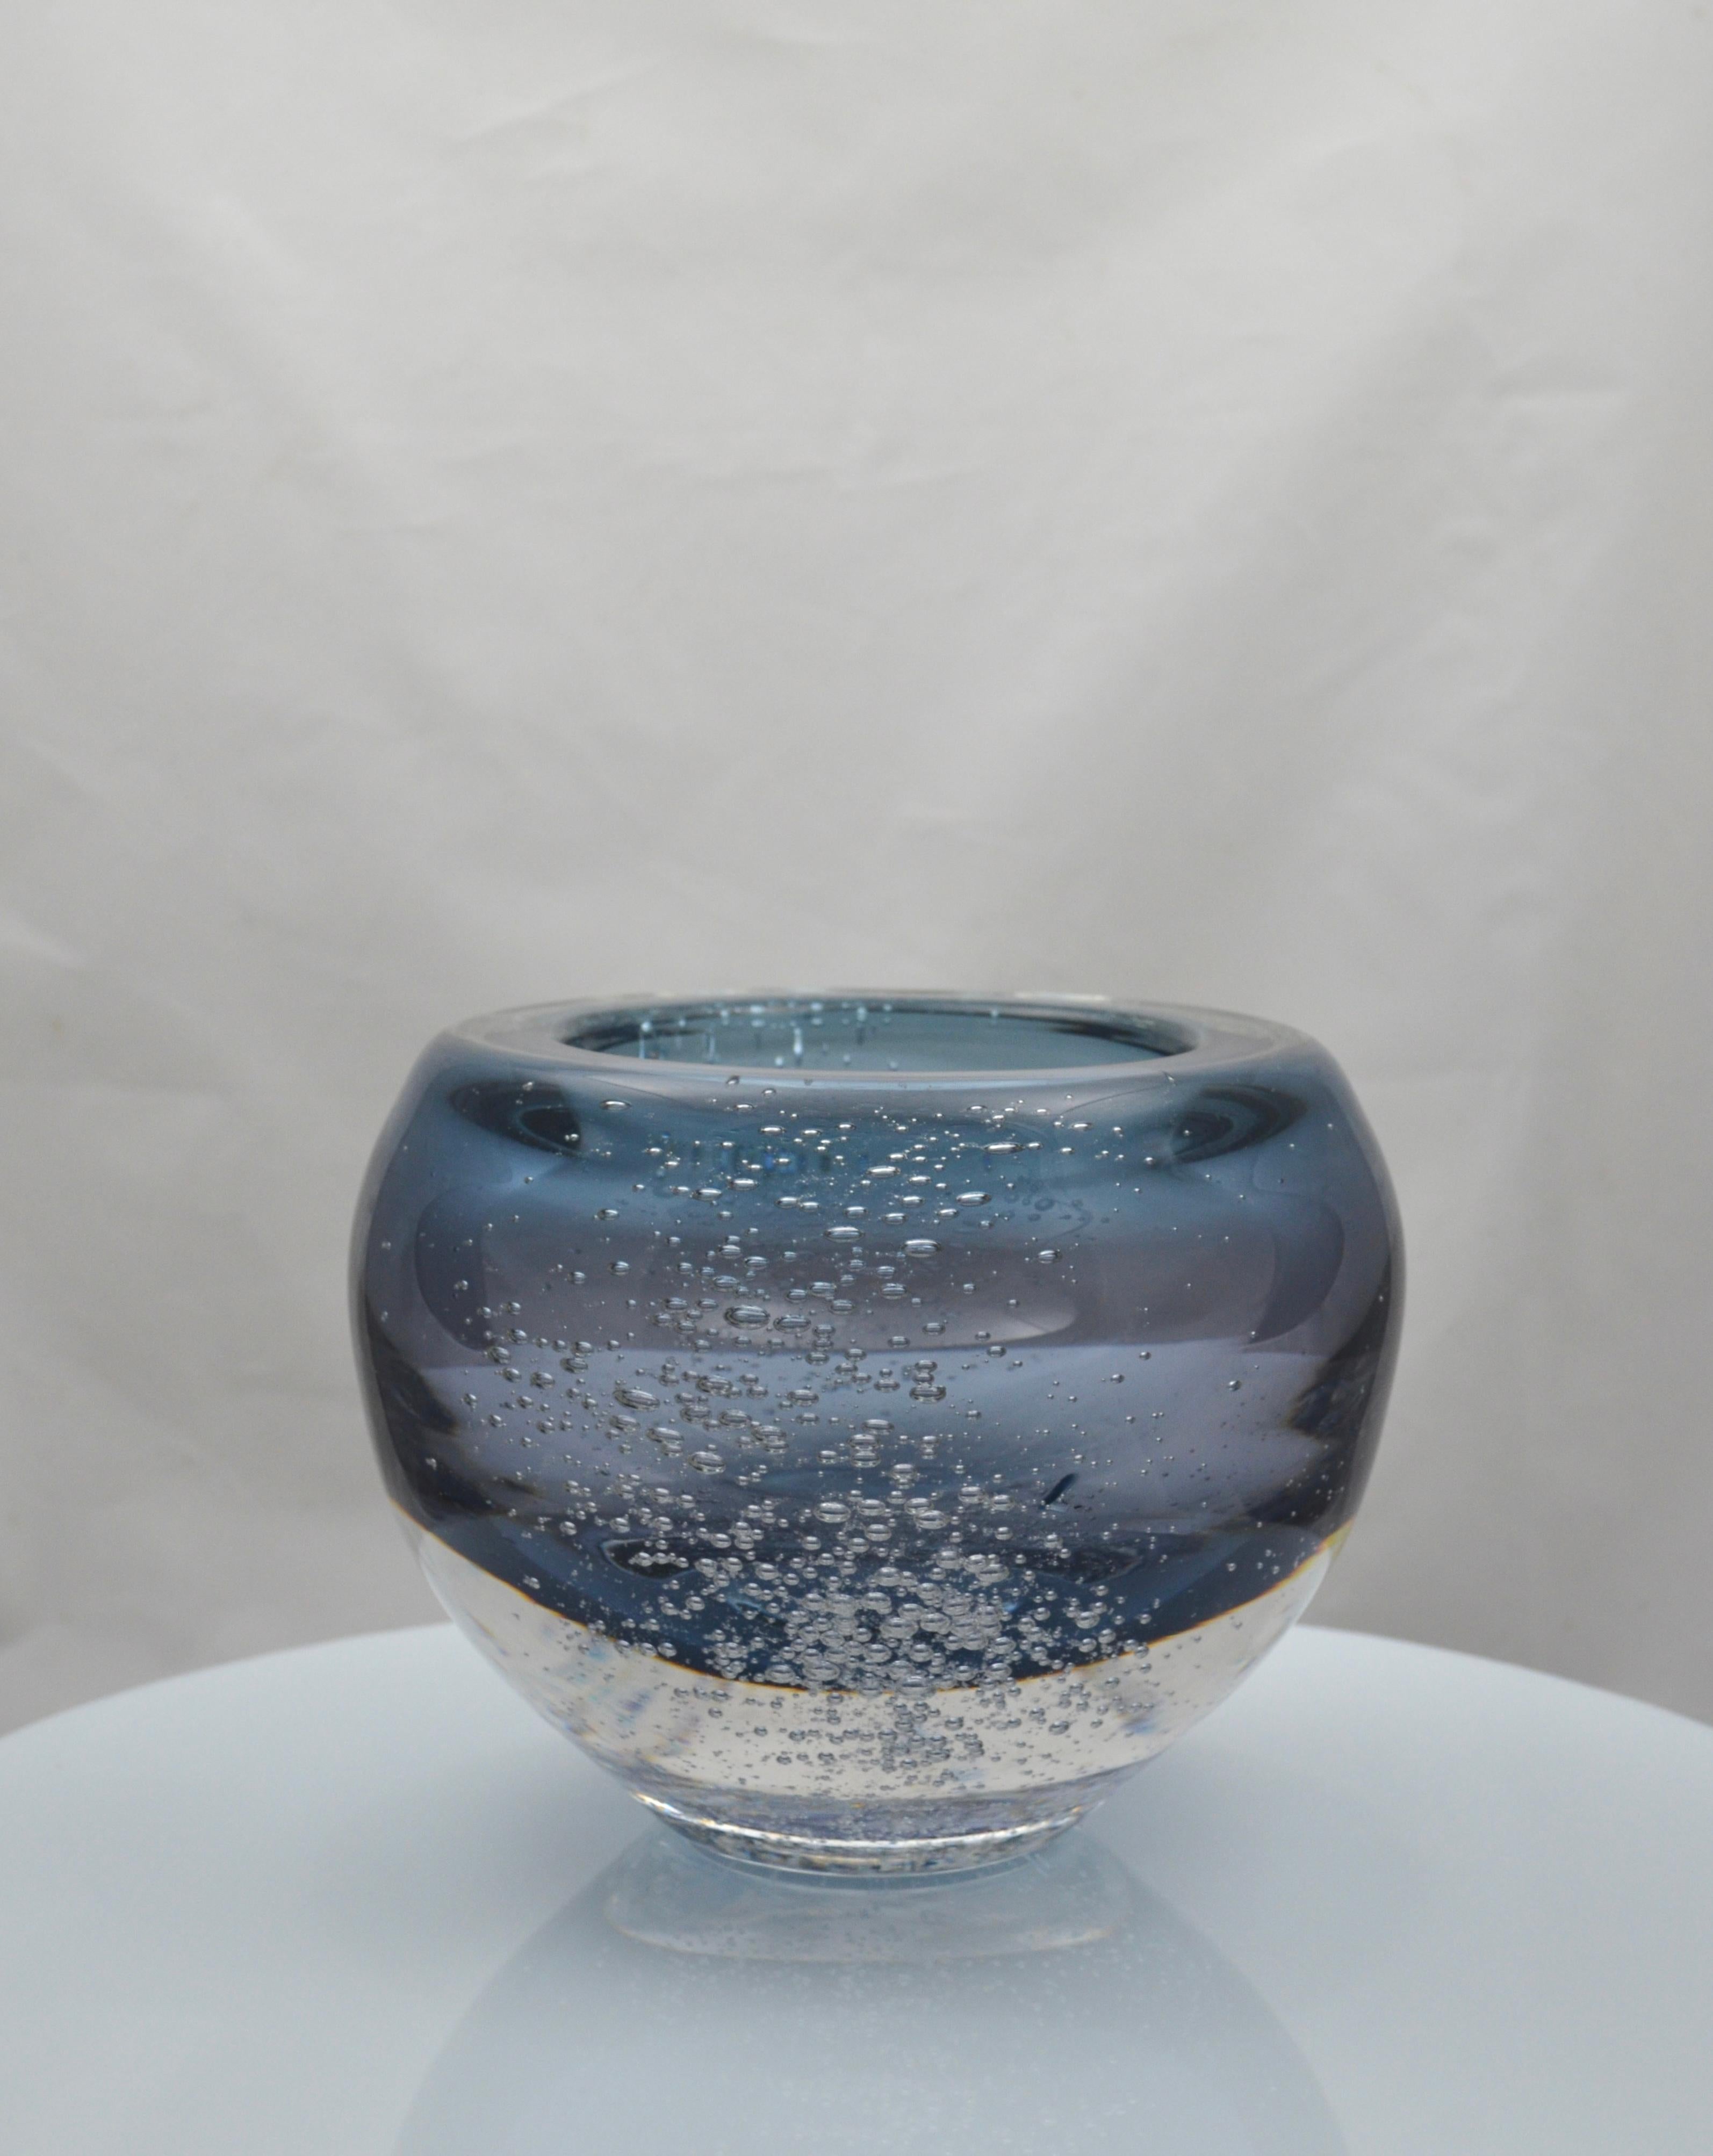 Wunderschönes mundgeblasenes Stück aus Öko-Kristall (Ersatz von Blei durch Bariumkarbonat), geschaffen vom portugiesischen Glasmachermeister Nelson FIGUEIREDO.
Einzigartiges Stück!
Diese Schale hat ein schwedisch inspiriertes, minimalistisches